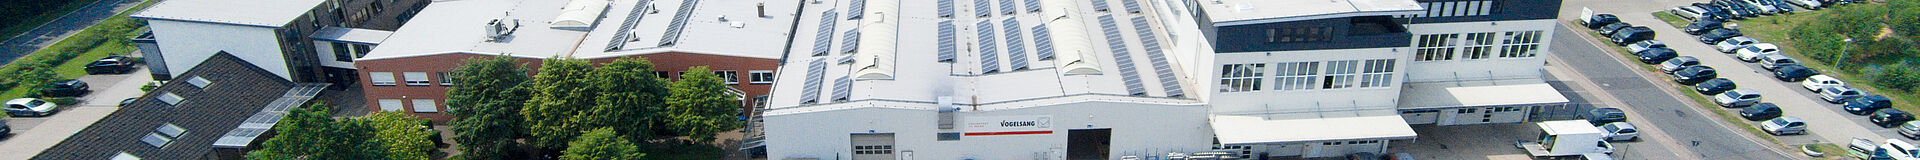 Case Study - Gebr. Alpen Biogas GmbH & Co. KG - EnergyJet und RotaCut RCX-58G